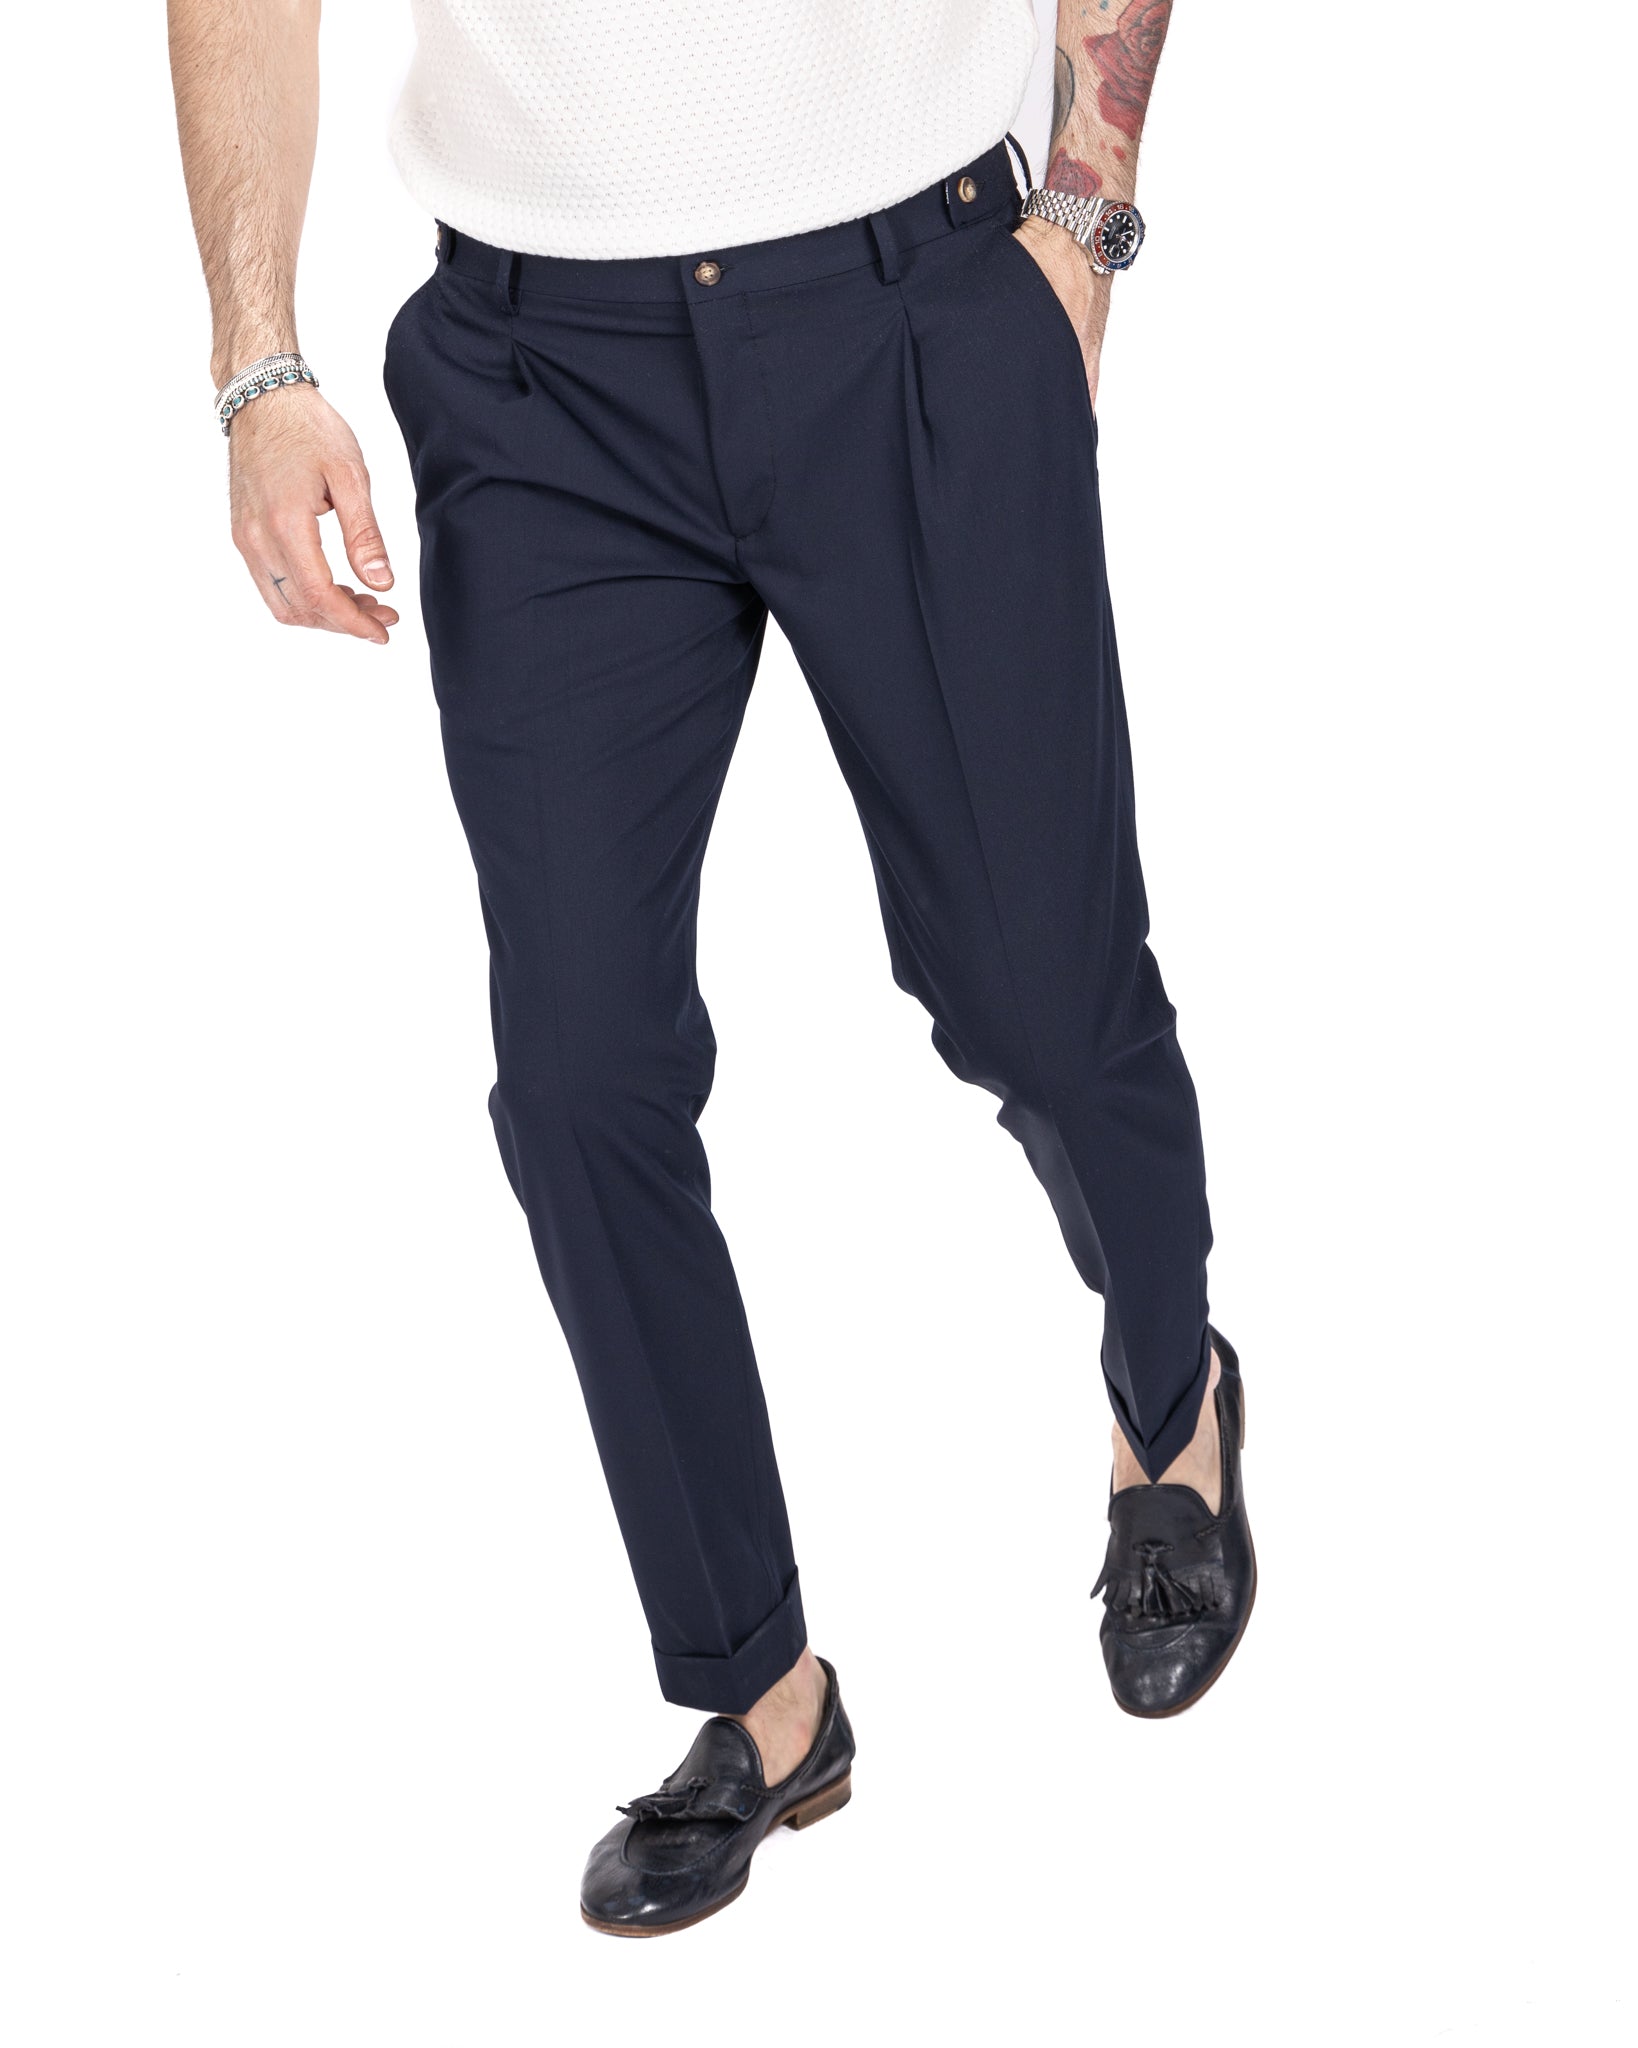 Milan - basic blue trousers